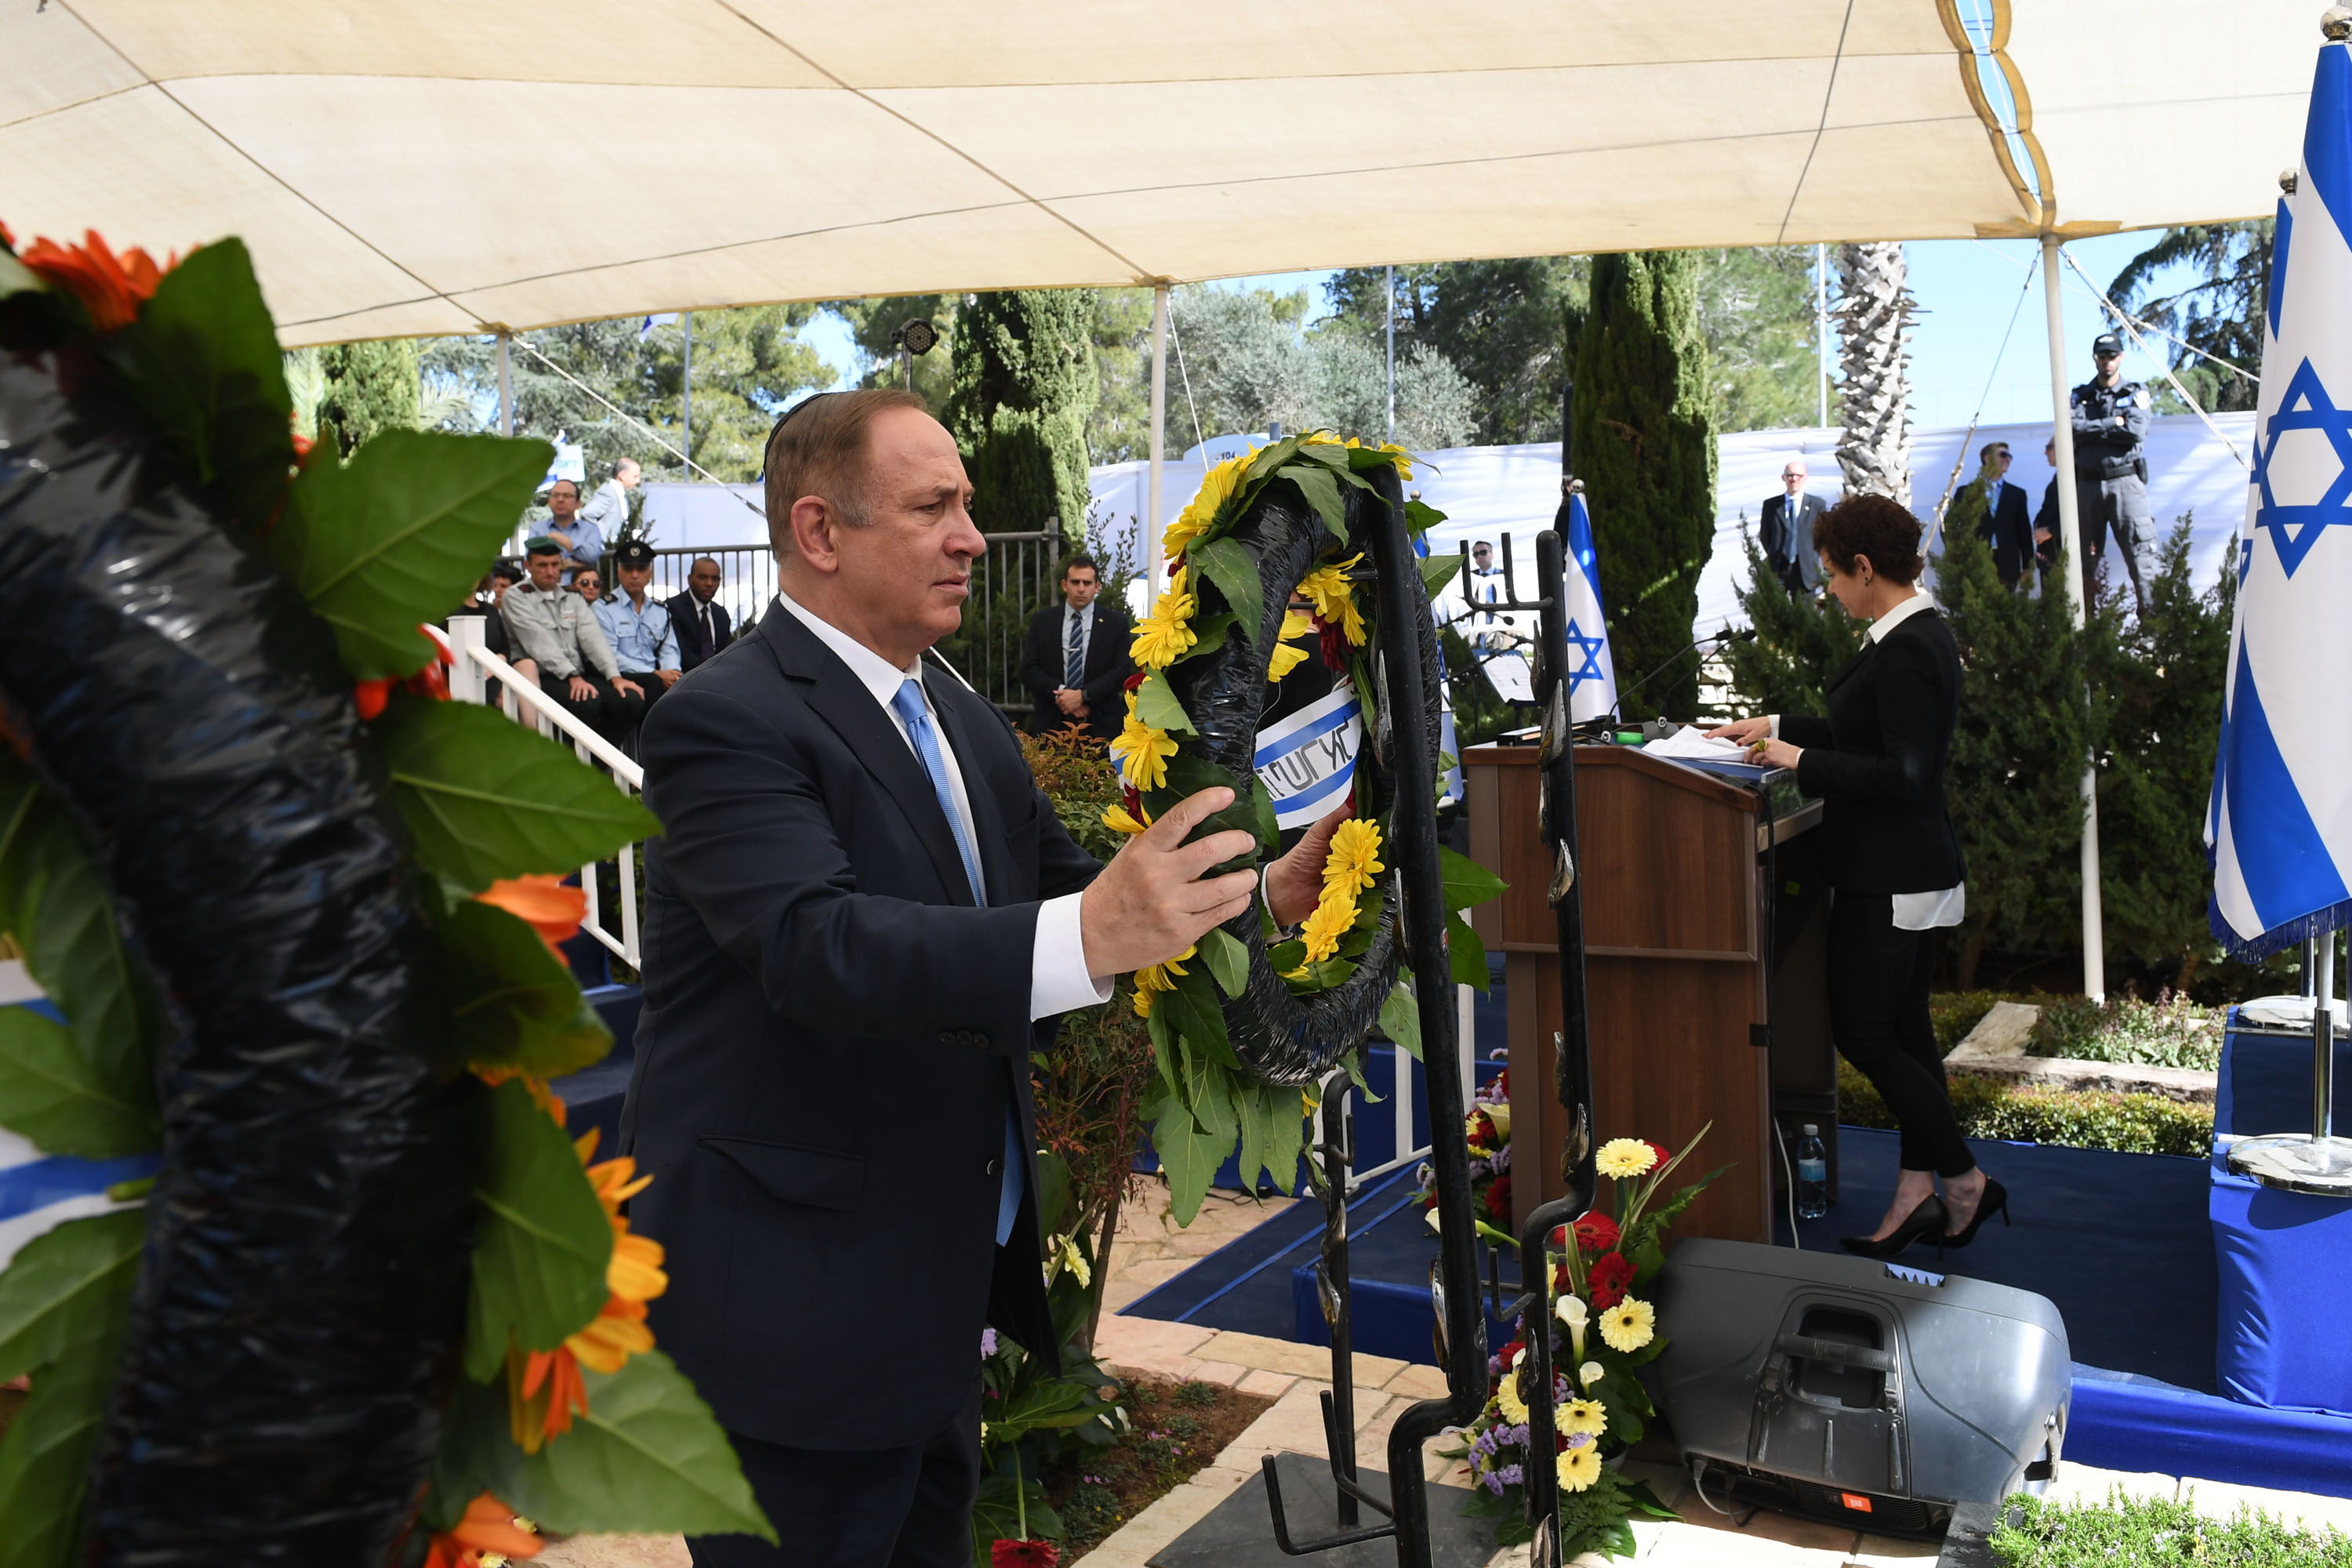 ראש הממשלה בנימין נתניהו בטקס האזכרה הממלכתי לחיים הרצוג ז"ל בהר הרצל